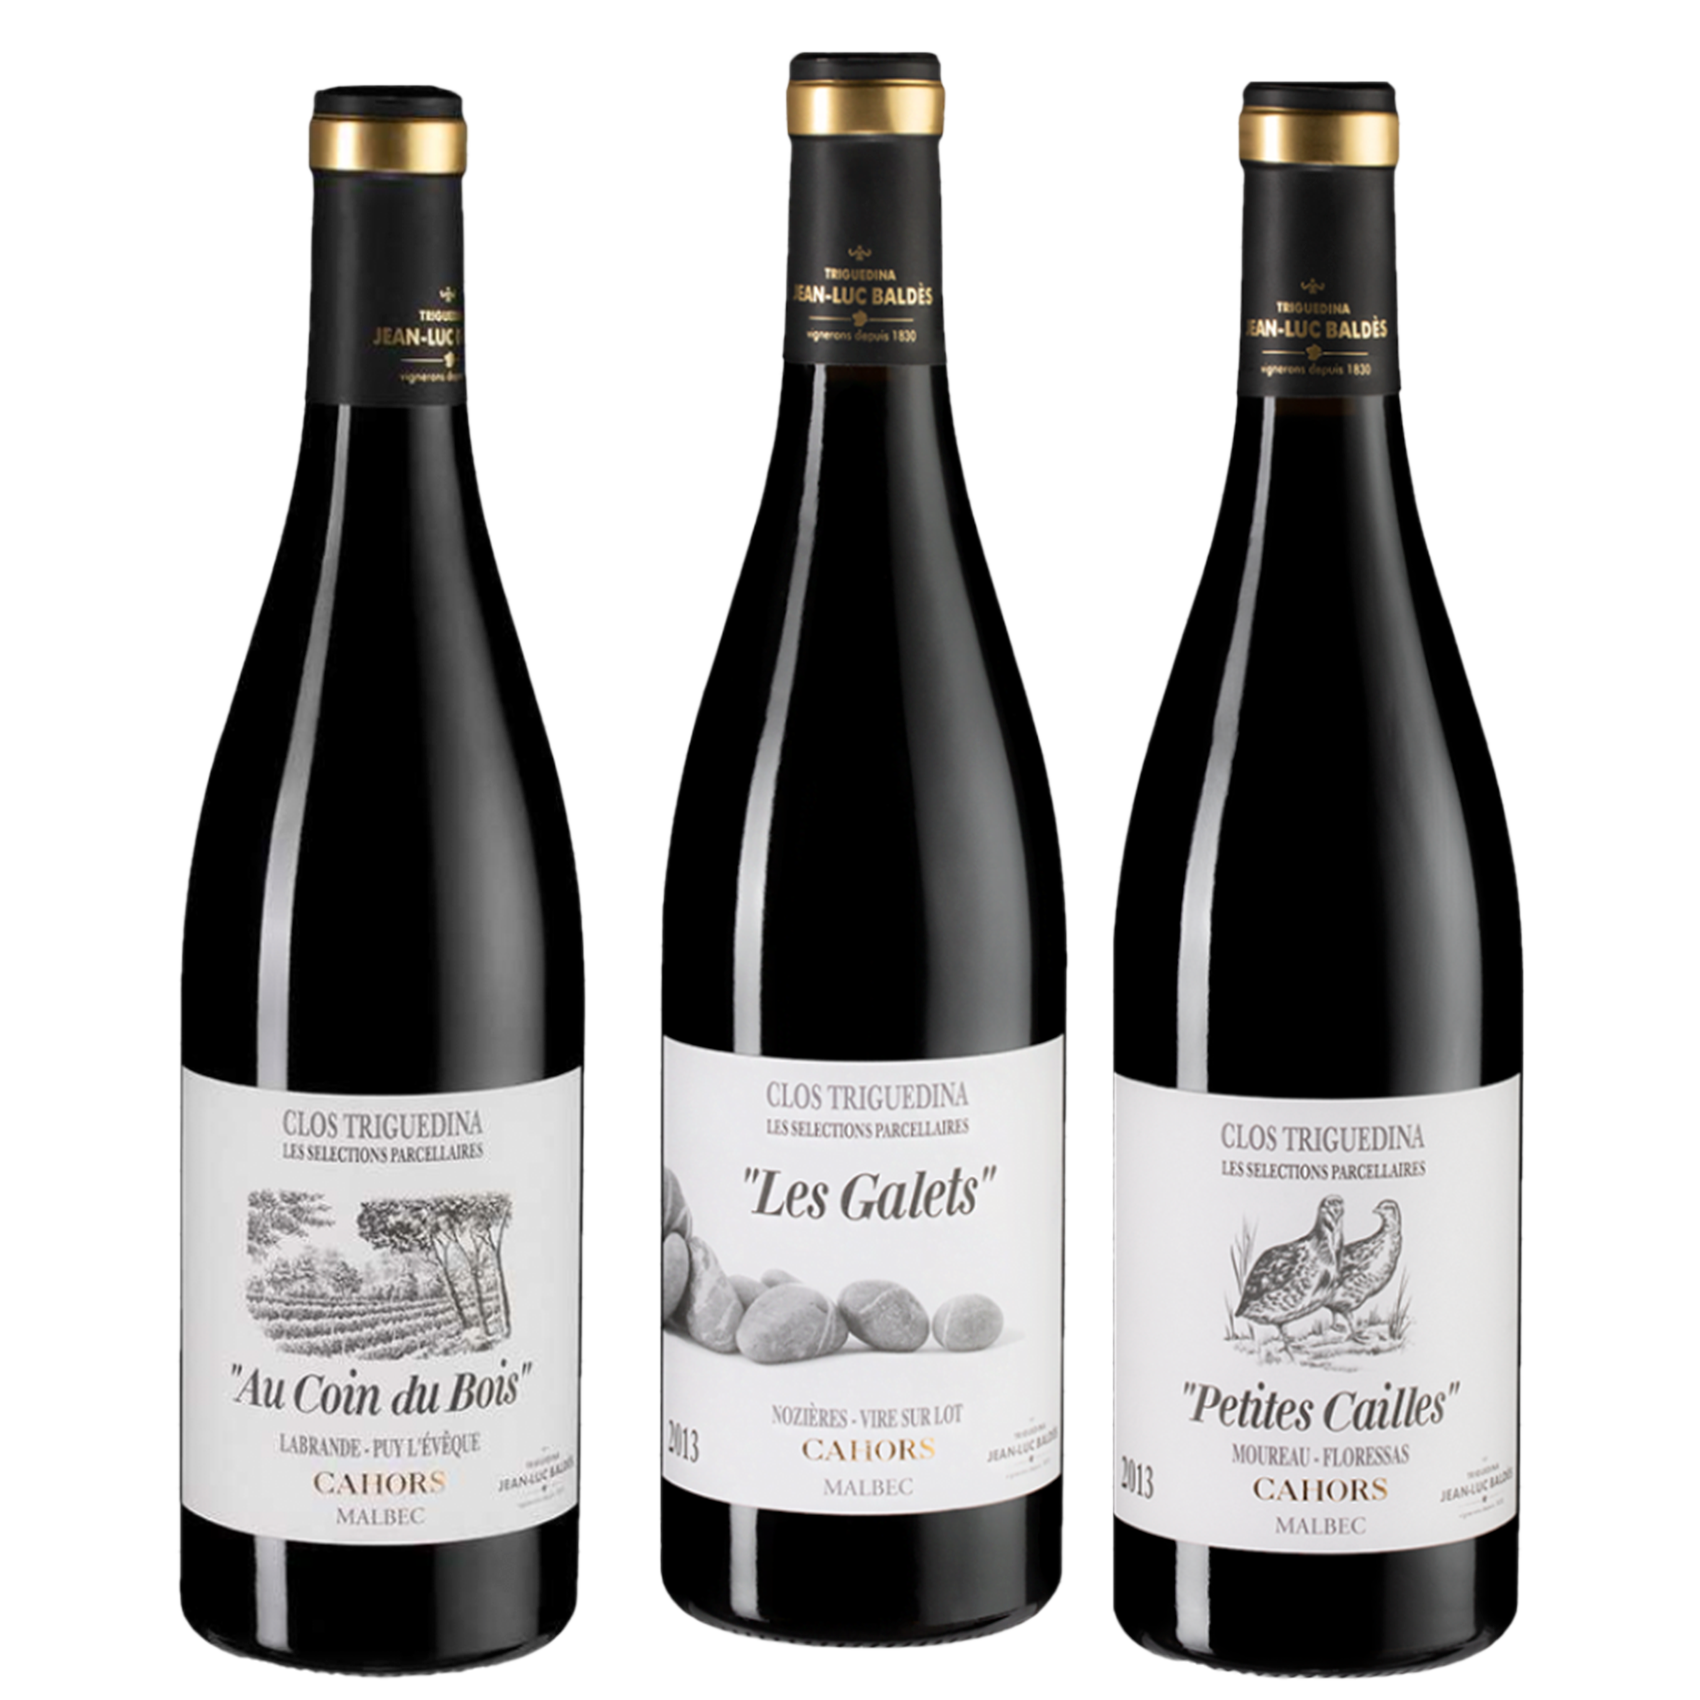 La Trilogie de vinos Malbec, vinos tintos, vinos malbec